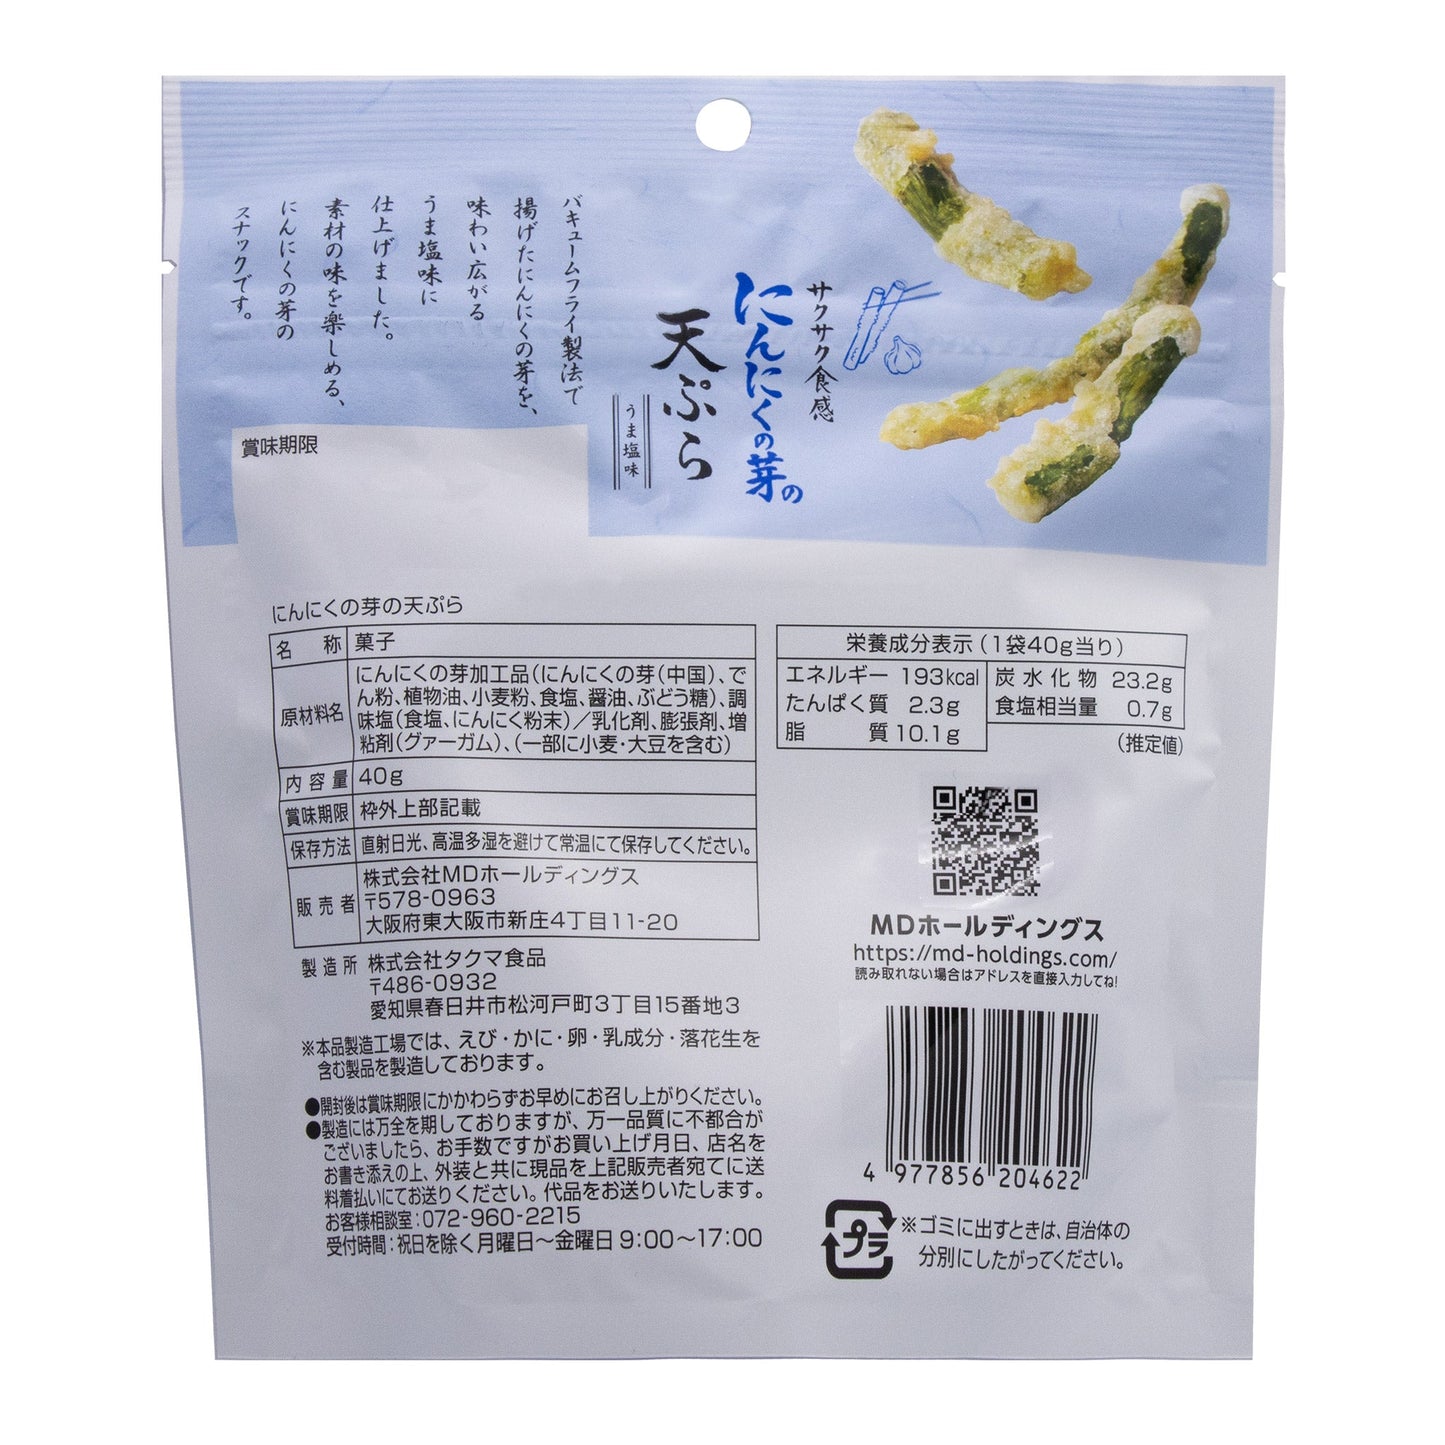 にんにくの芽の天ぷら